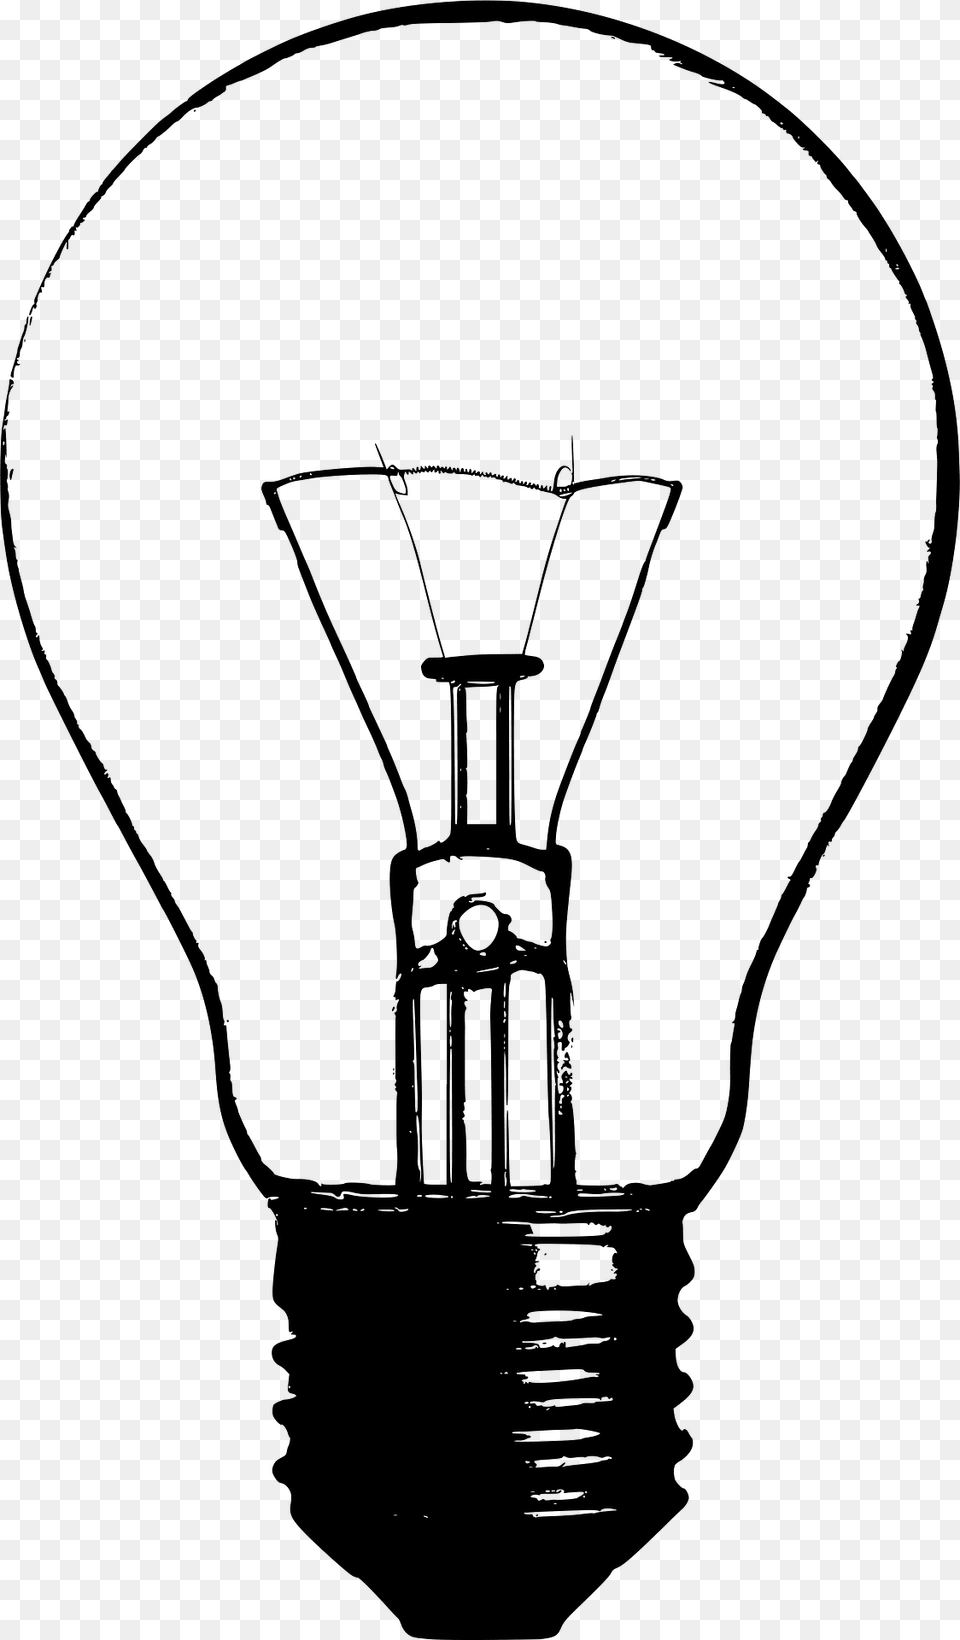 Lightbult Clipart, Light, Lightbulb Png Image